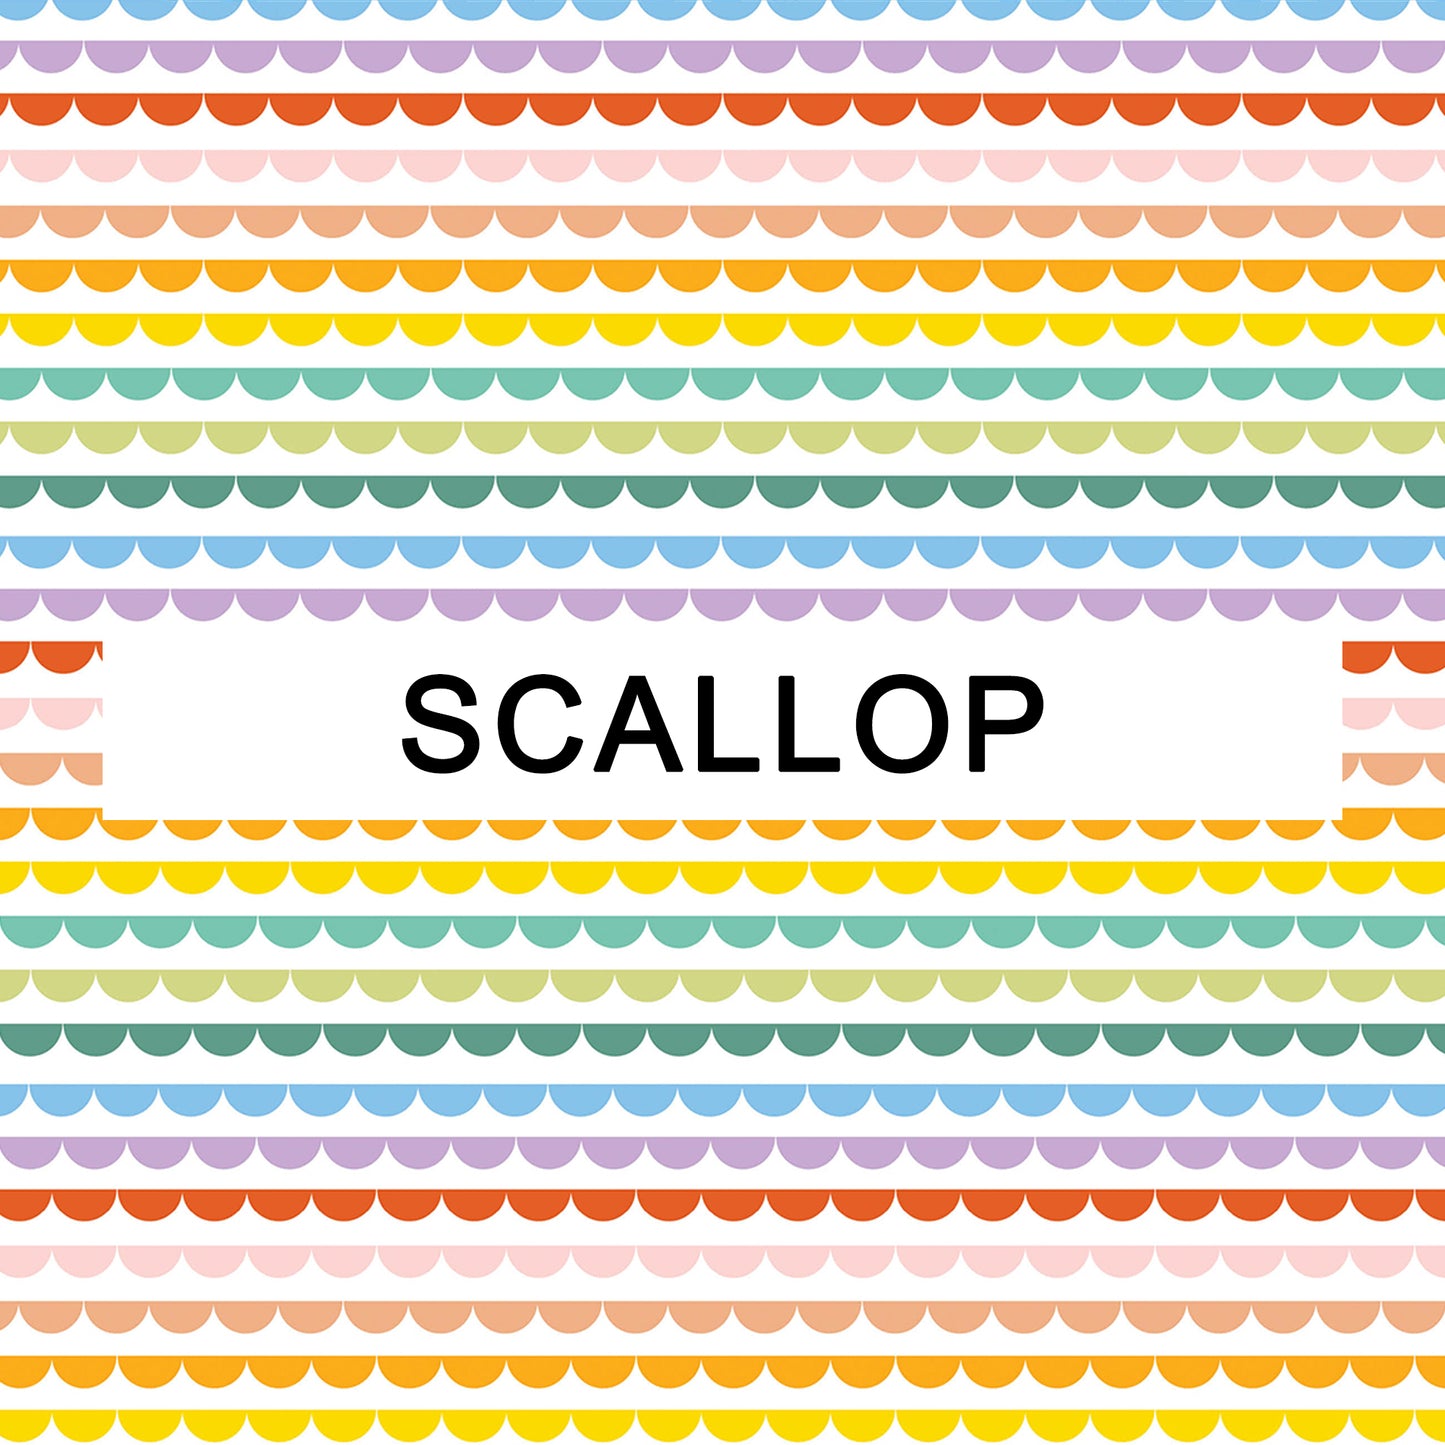 Scallop - Birth Counter